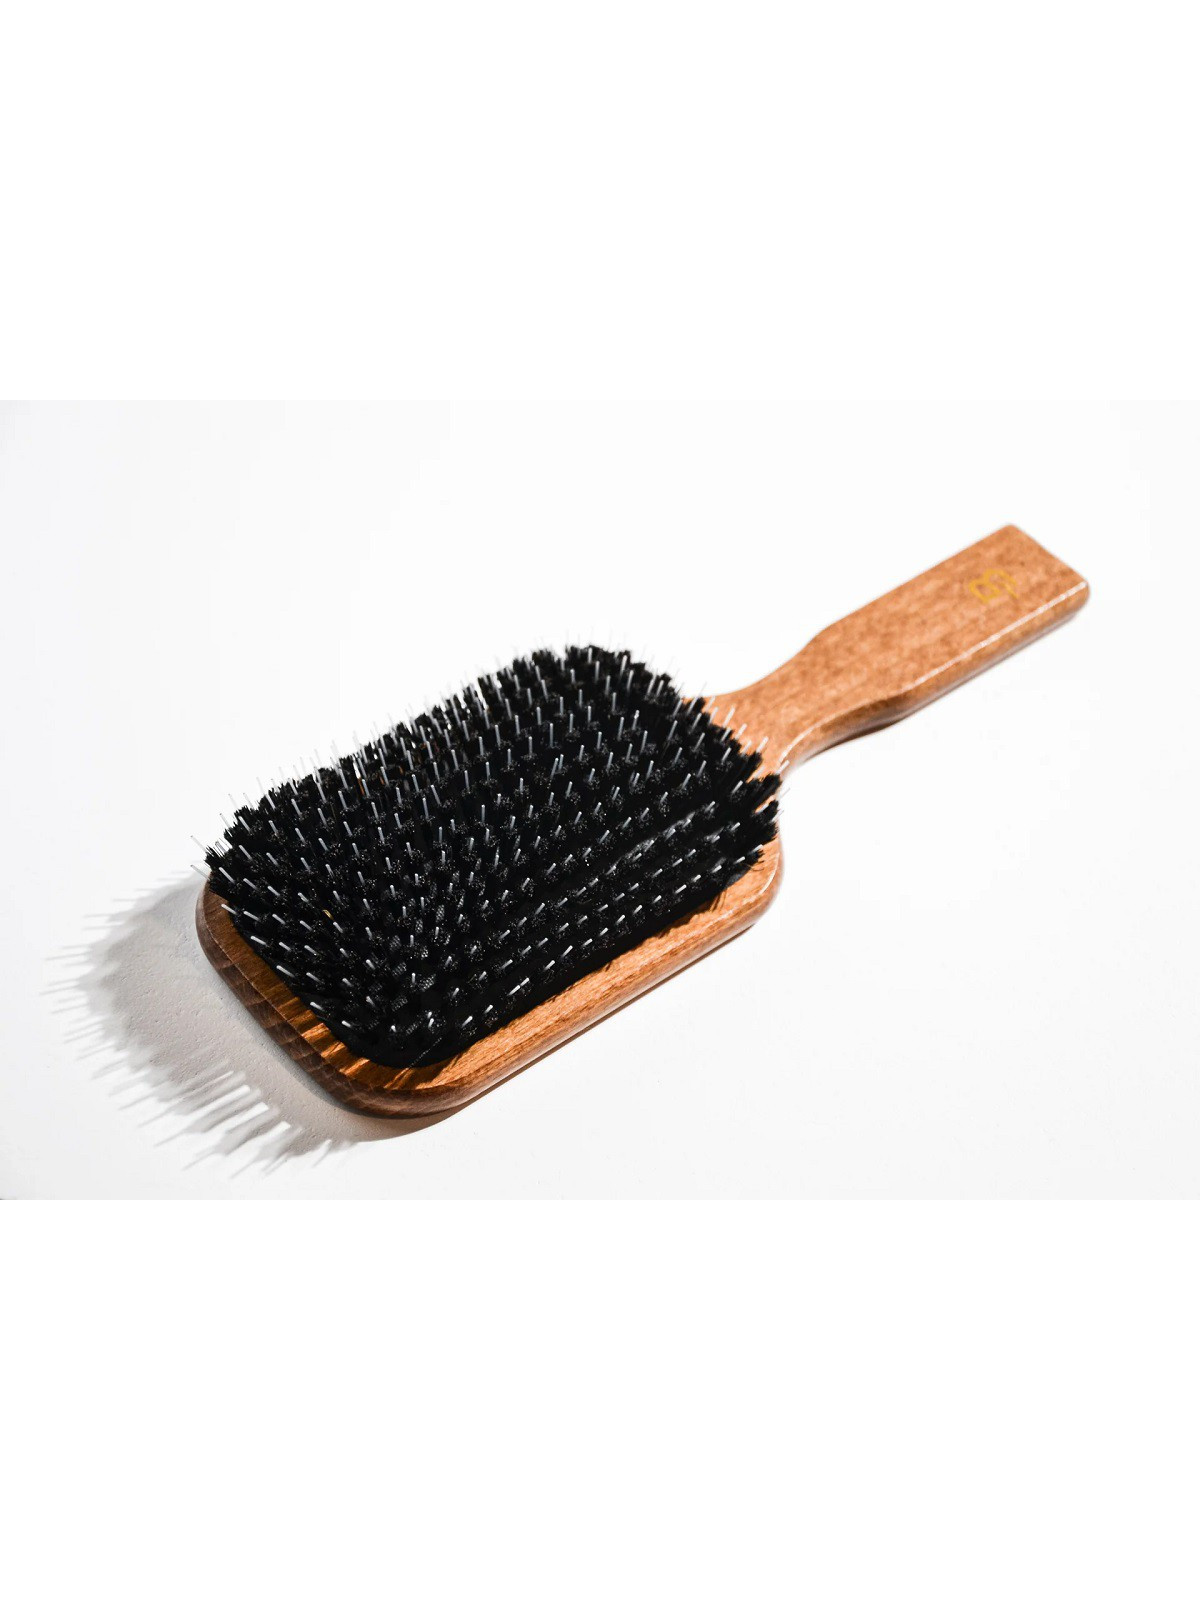 Plaukų šepetys su natūraliais šereliais BELOSA Hair Brush 13R